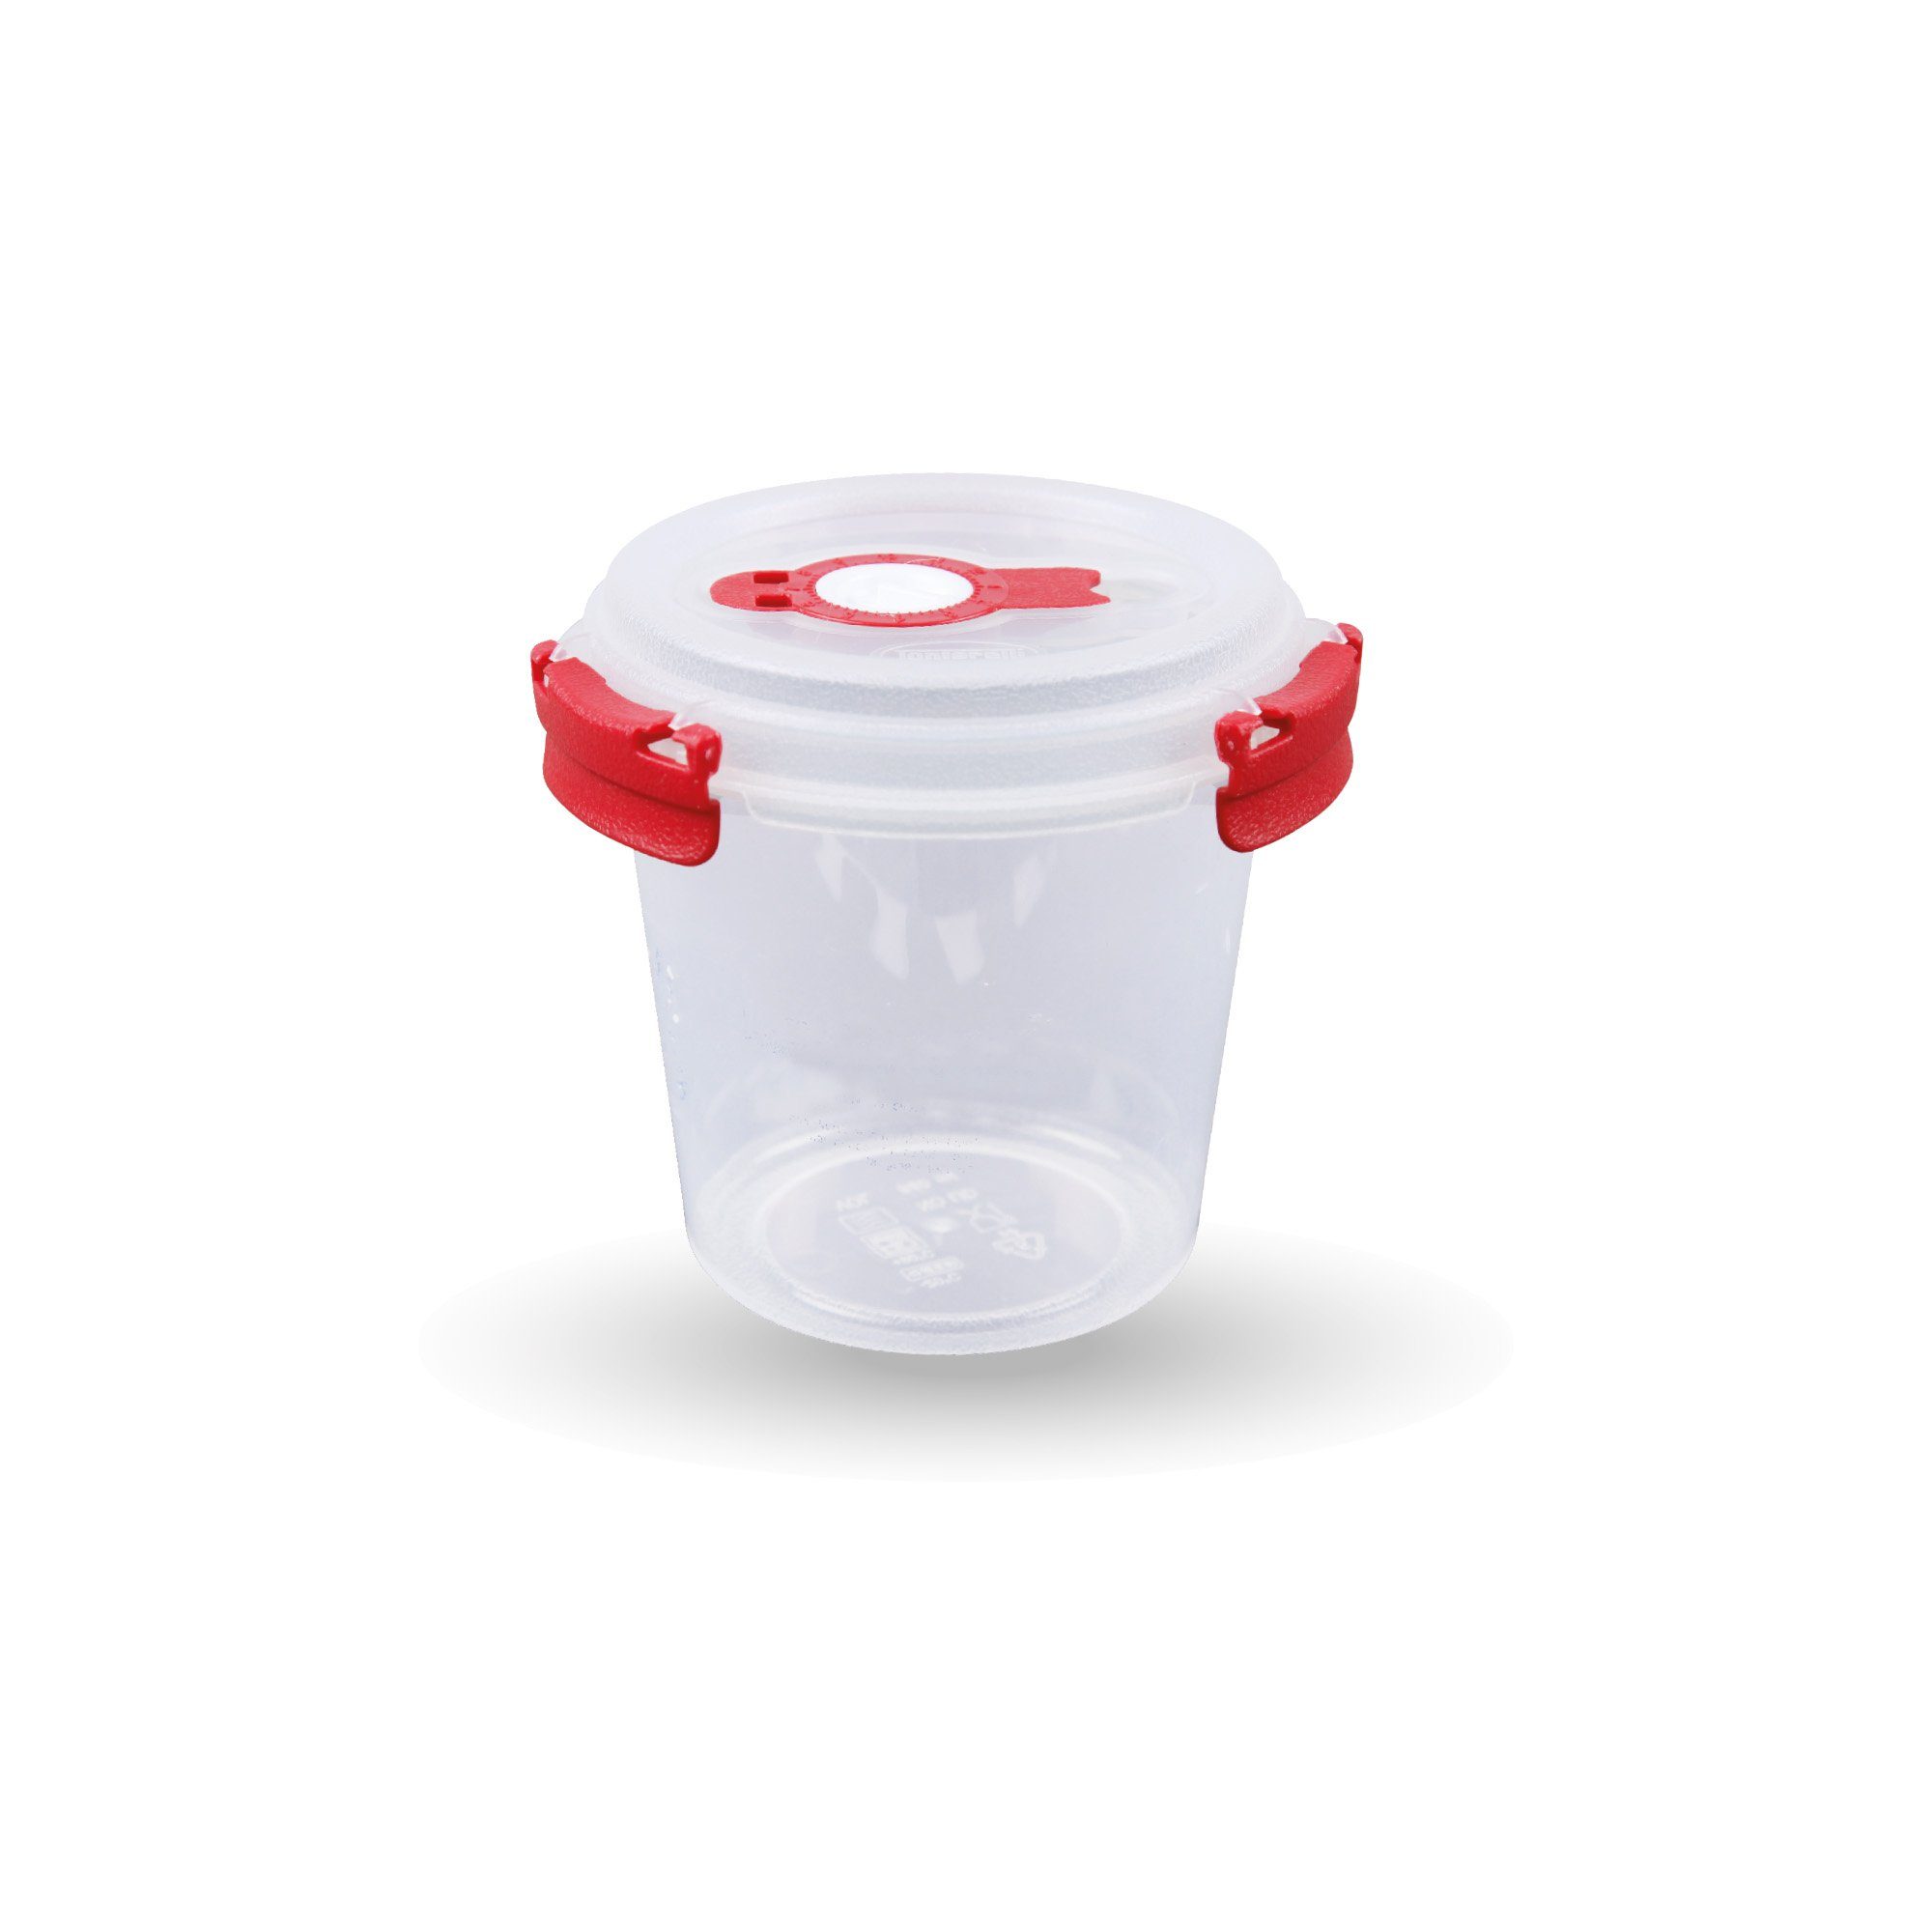 Frischhaltedose Bestlivings Fresh luftdicht Frischhaltebox Vorratsdose Lebensmittel Rot - Prep Kunststoff, Meal - Aufbewahrungsbox System,